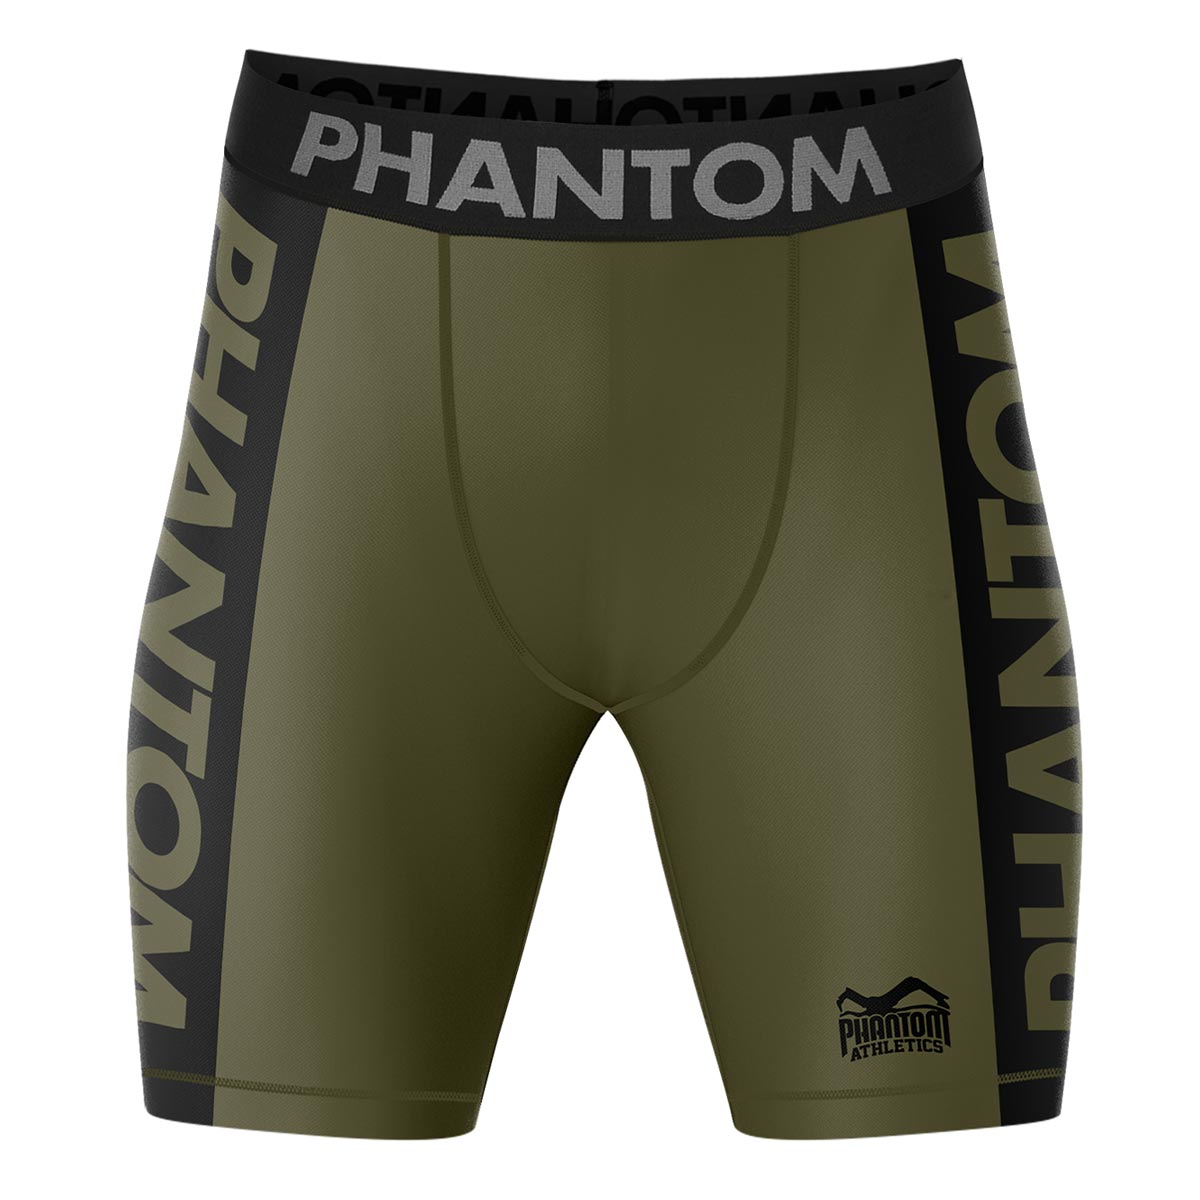 Phantom Compression Fightshorts in Army/Grün. Ultimativer Komfort und Bewegungsfreiheit. Ideal für deinen Kampfsport. 